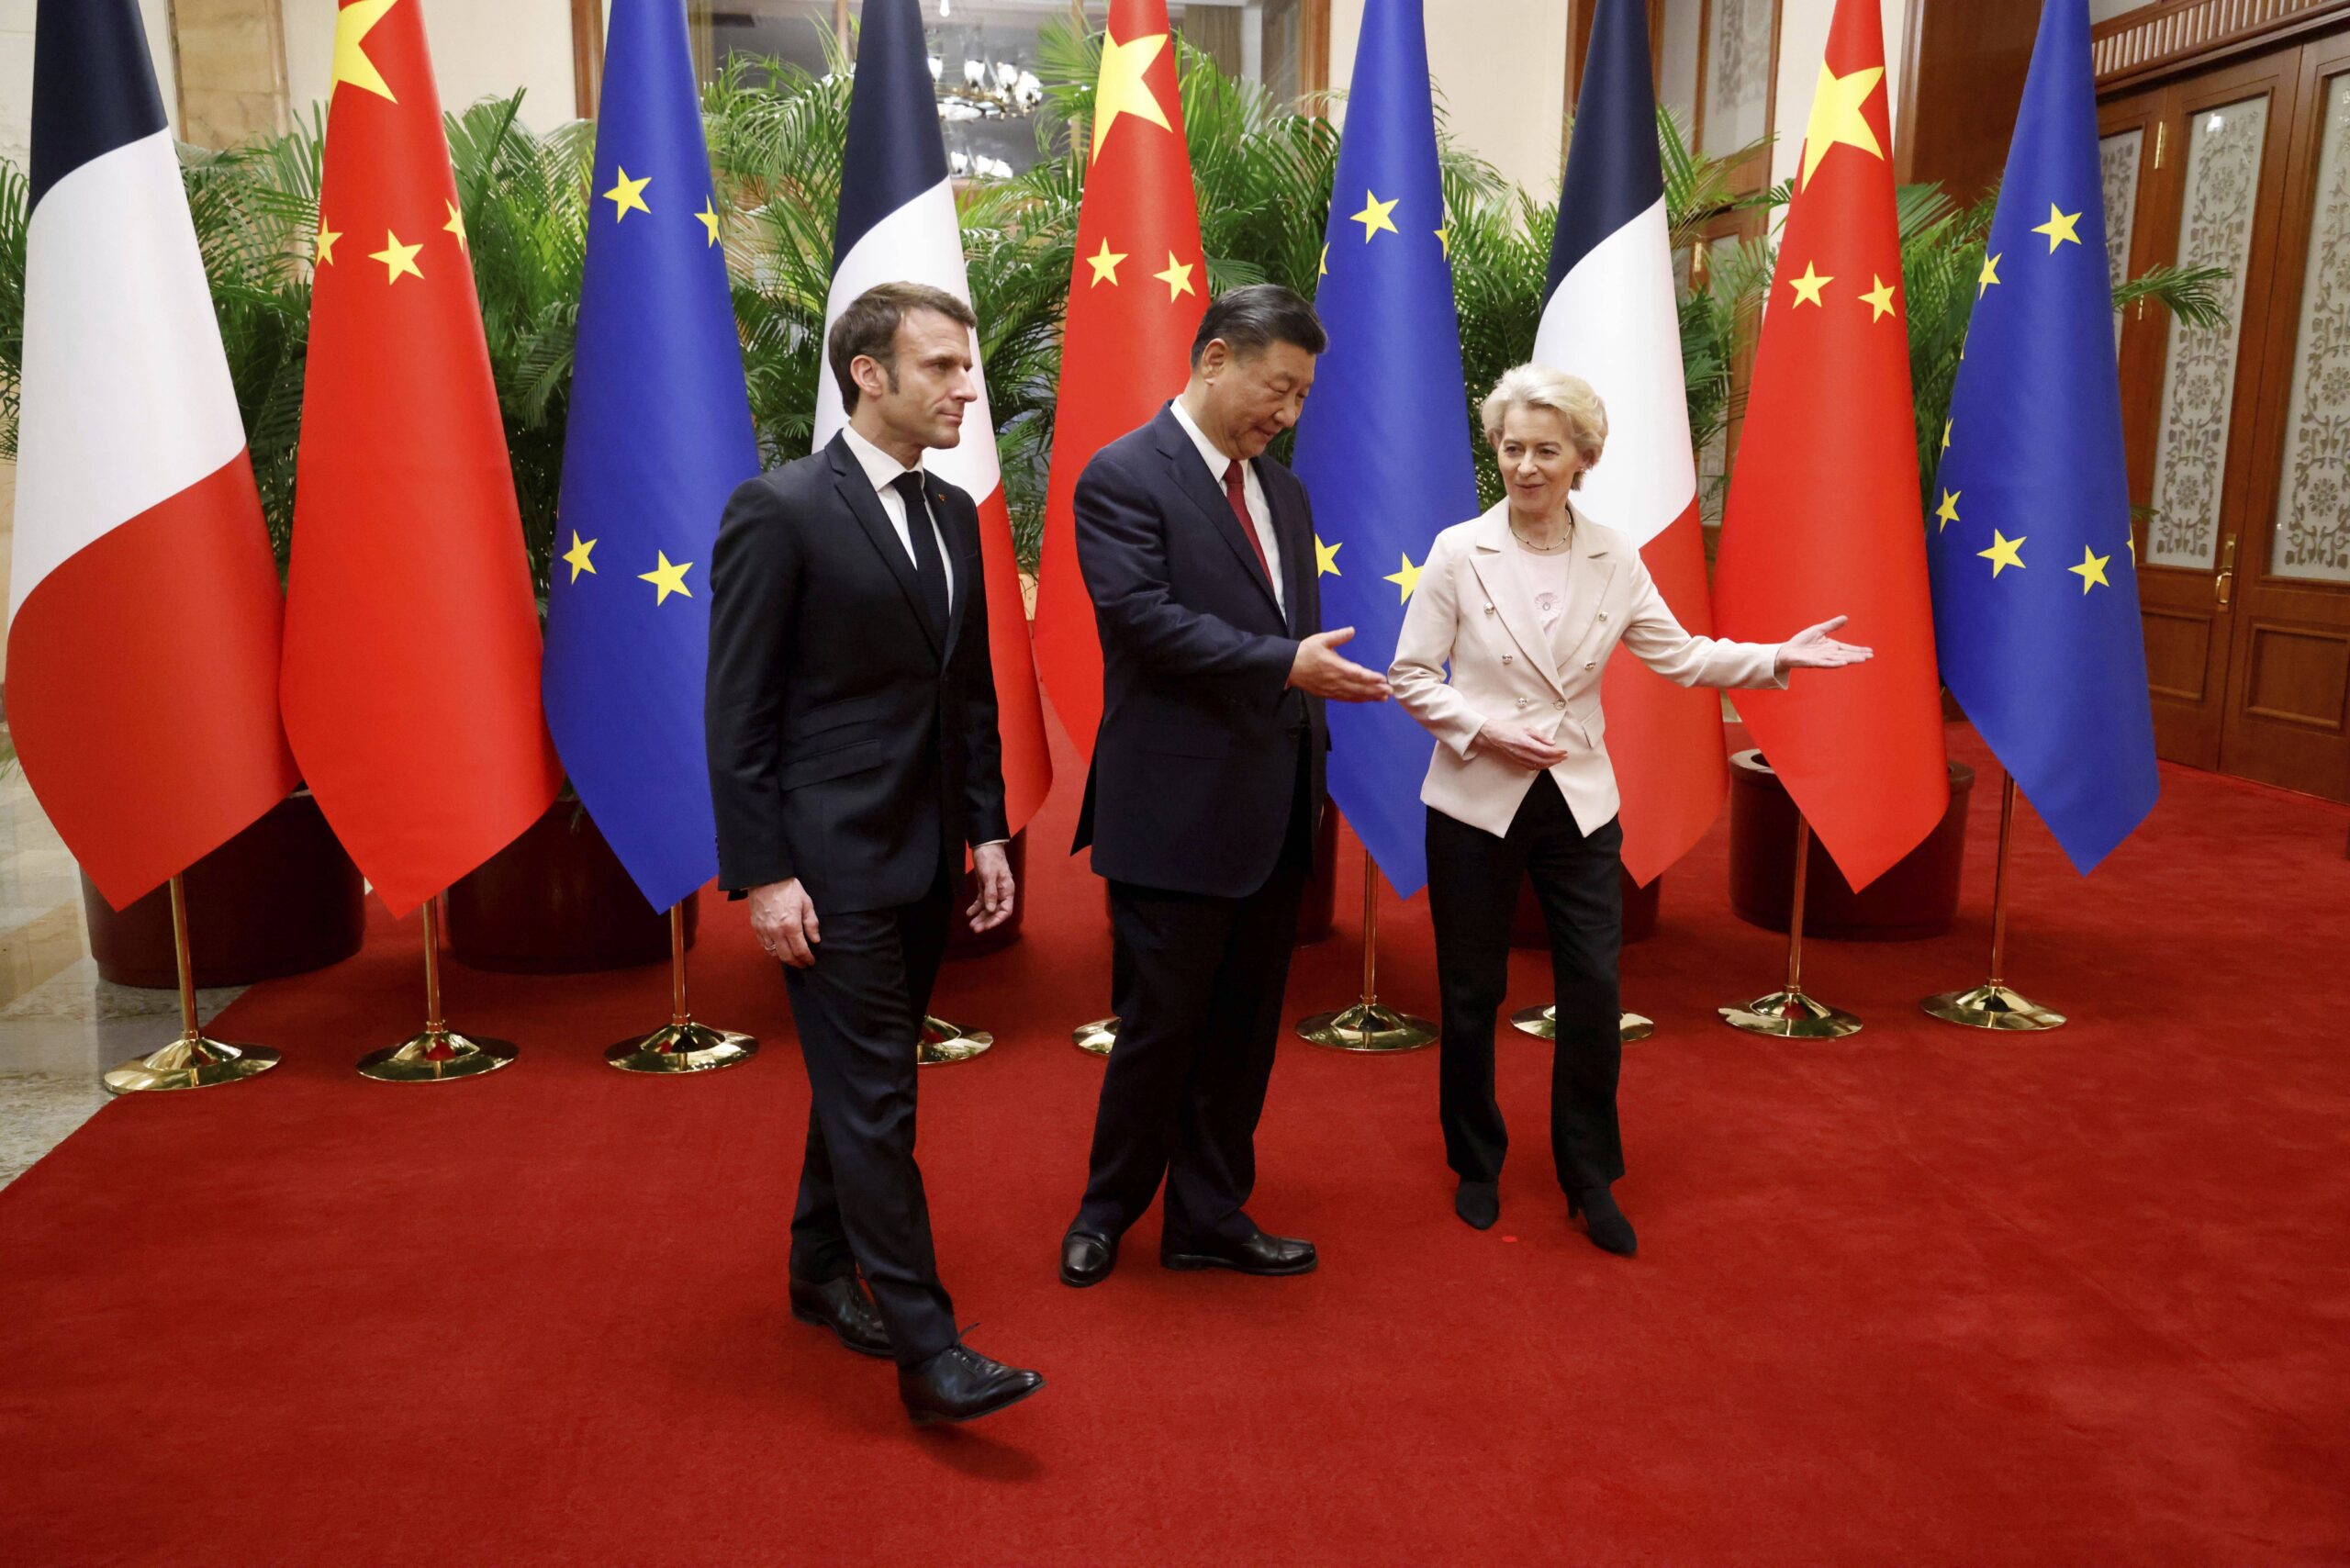 El presidente chino Xi Jinping, su homólogo francés Emmanuel Macron y la presidenta de la Comisión Europea Ursula von der Leyen se reúnen para una sesión de trabajo en Pekín el jueves 6 de abril de 2023 © Ludovic Marin/Pool Photo via AP